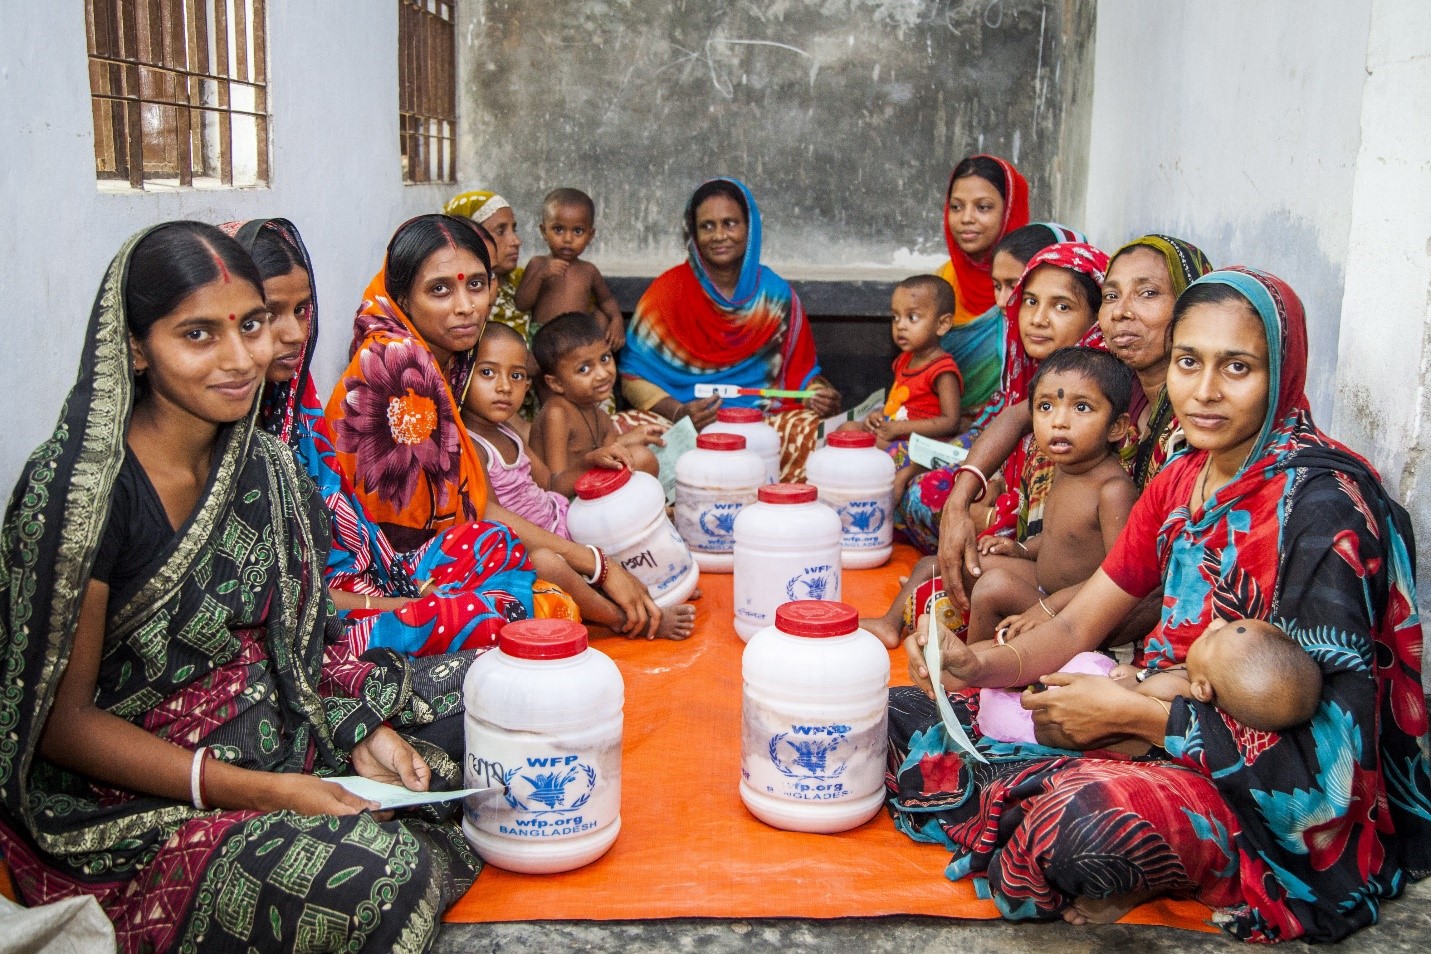 المشاركات في برنامج تدريبي لبرنامج الأغذية العالمي في منطقة ساتخيرا، بنجلاديش، يحصلن على المواد الغذائية لأسرهن، قبل فترة طويلة من انتشار وباء كورونا المستجد (كوفيد-19). الصورة: برنامج الأغذية العالمي/راناك مارتن